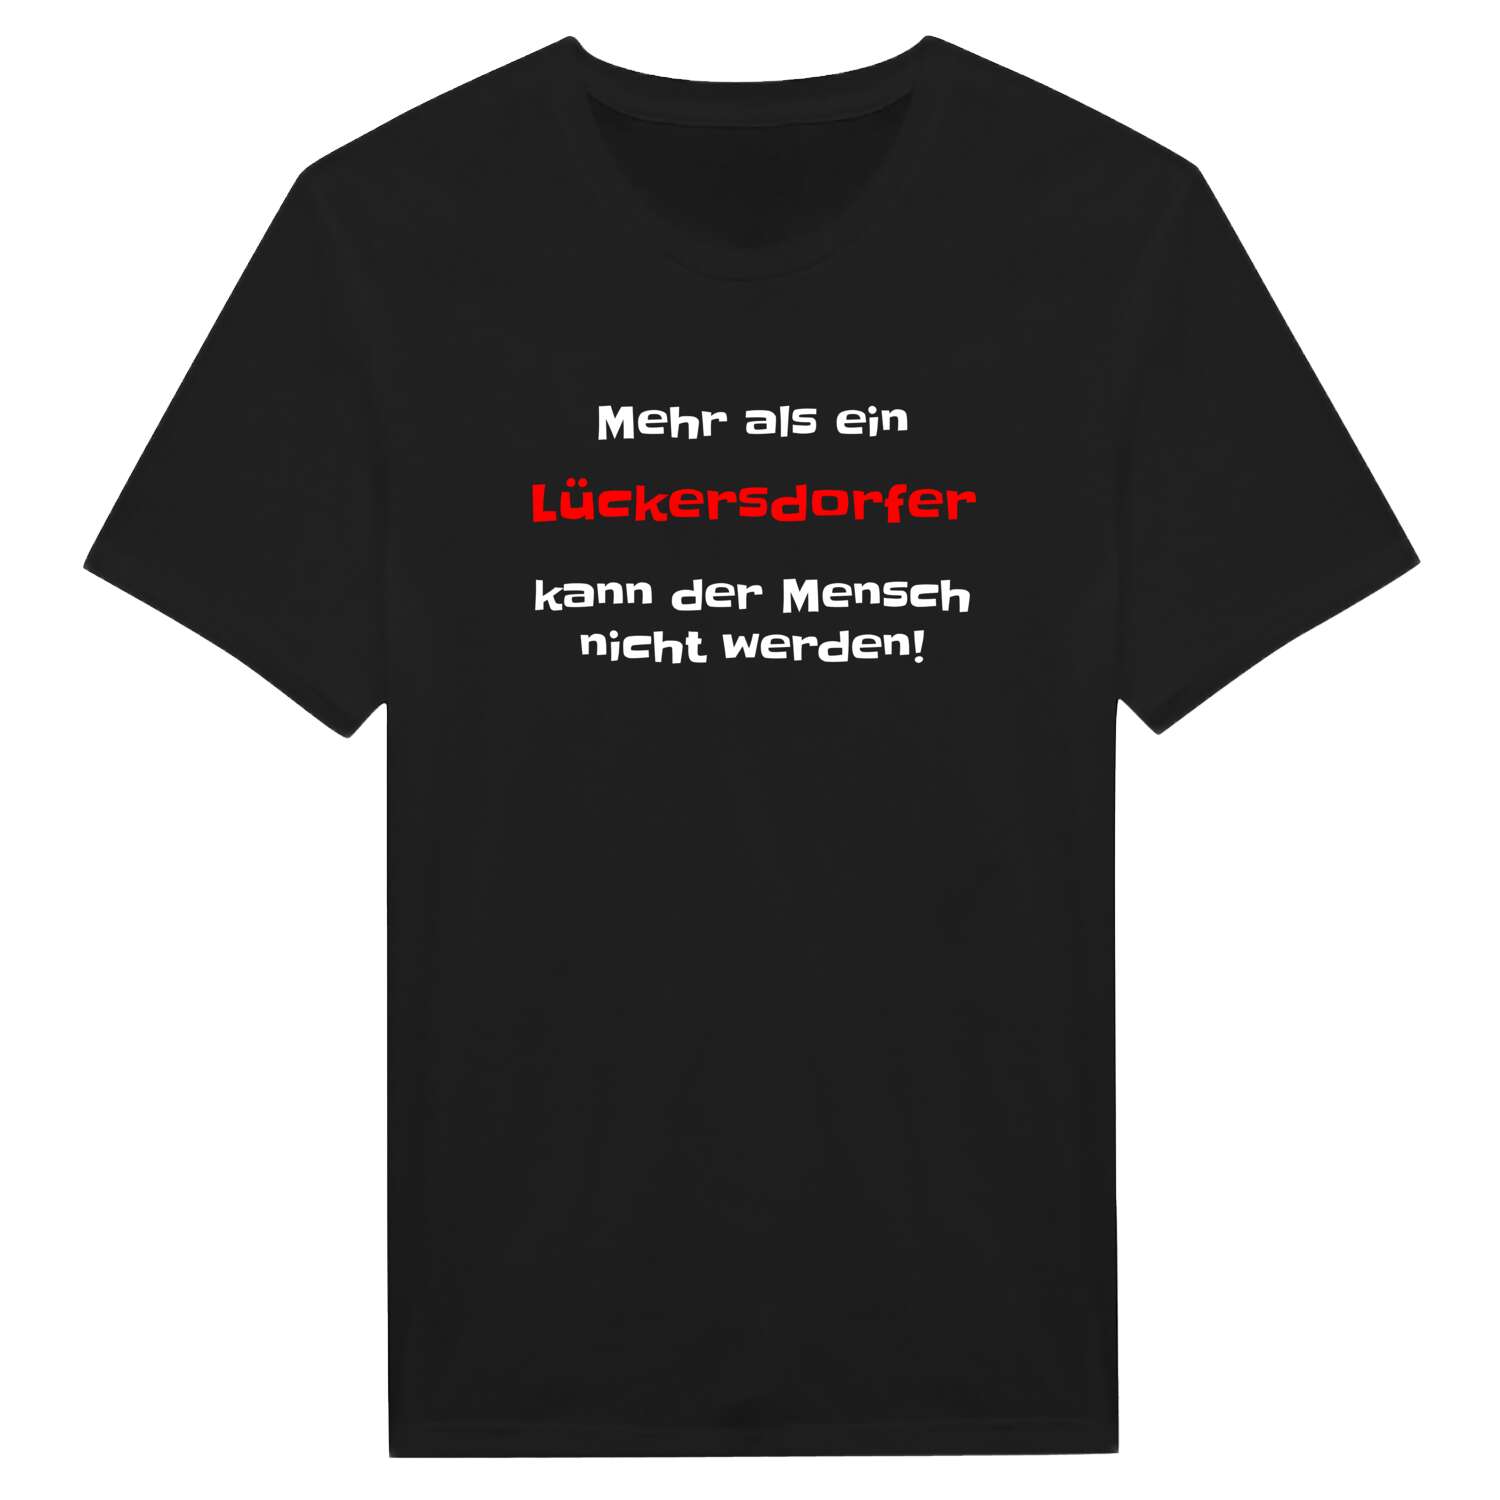 Lückersdorf T-Shirt »Mehr als ein«